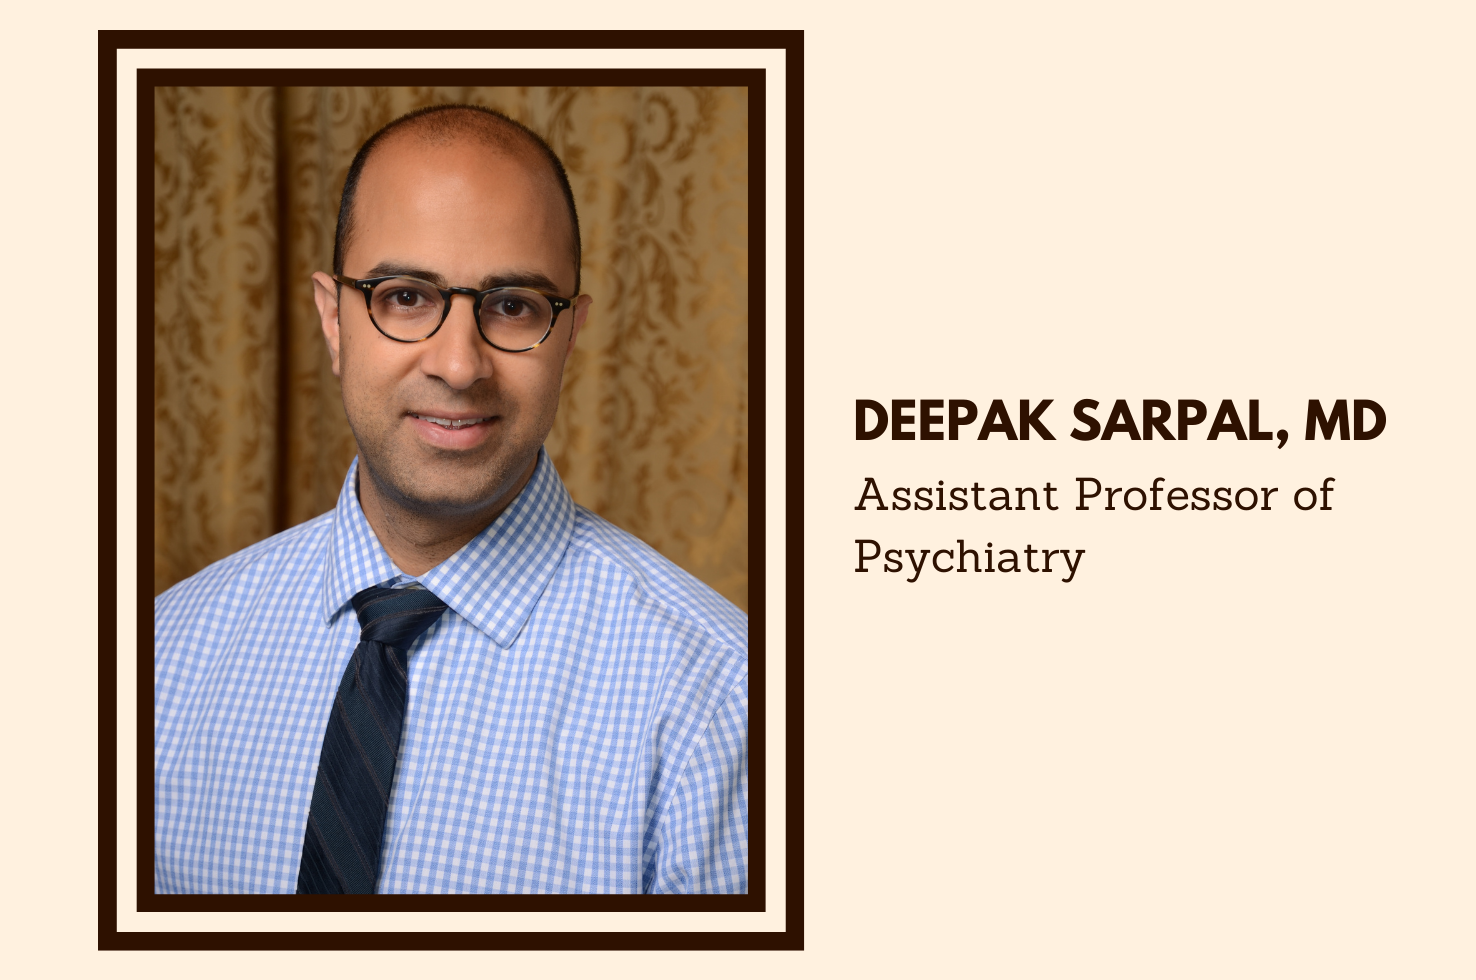 Dr. Deepak Sarpal